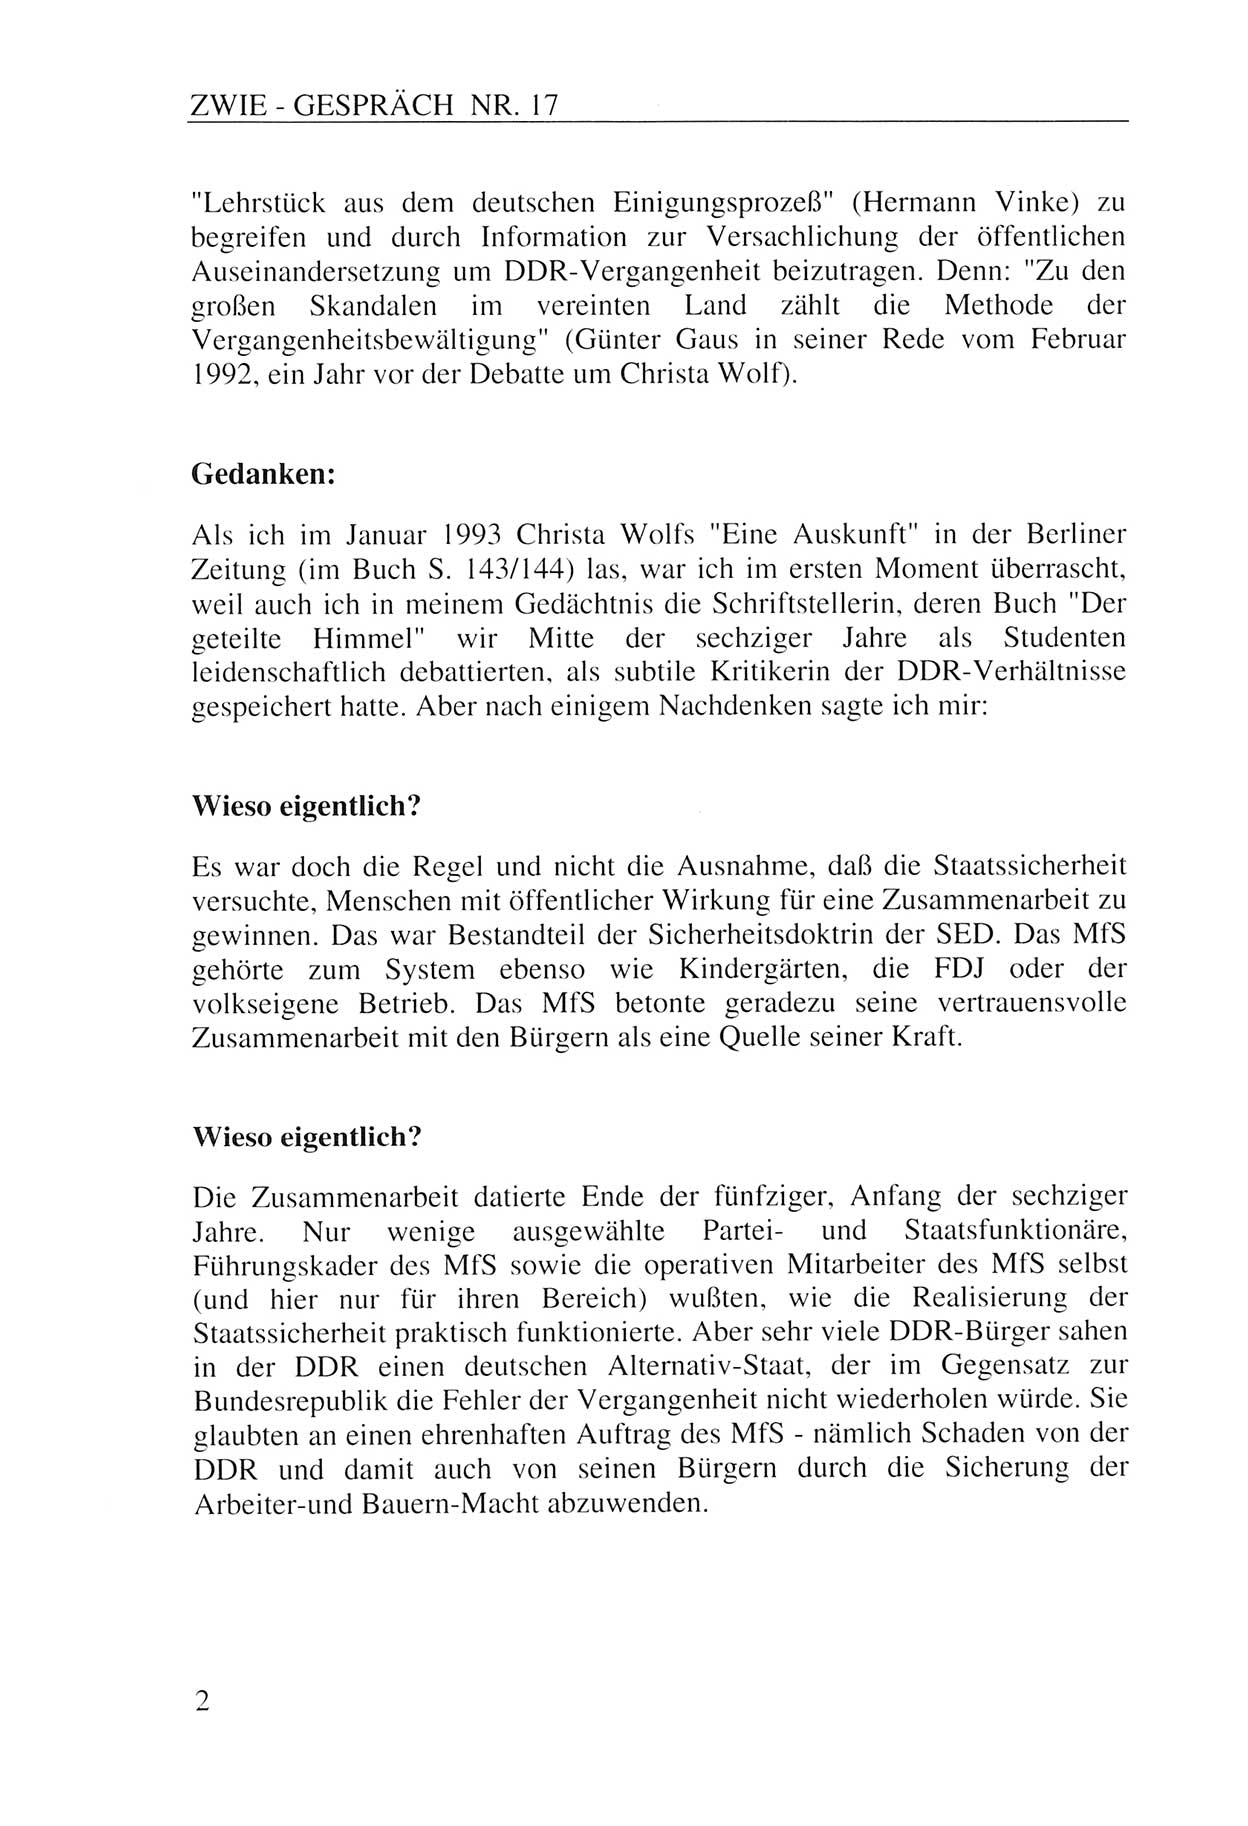 Zwie-Gespräch, Beiträge zur Aufarbeitung der Staatssicherheits-Vergangenheit [Deutsche Demokratische Republik (DDR)], Ausgabe Nr. 17, Berlin 1993, Seite 2 (Zwie-Gespr. Ausg. 17 1993, S. 2)